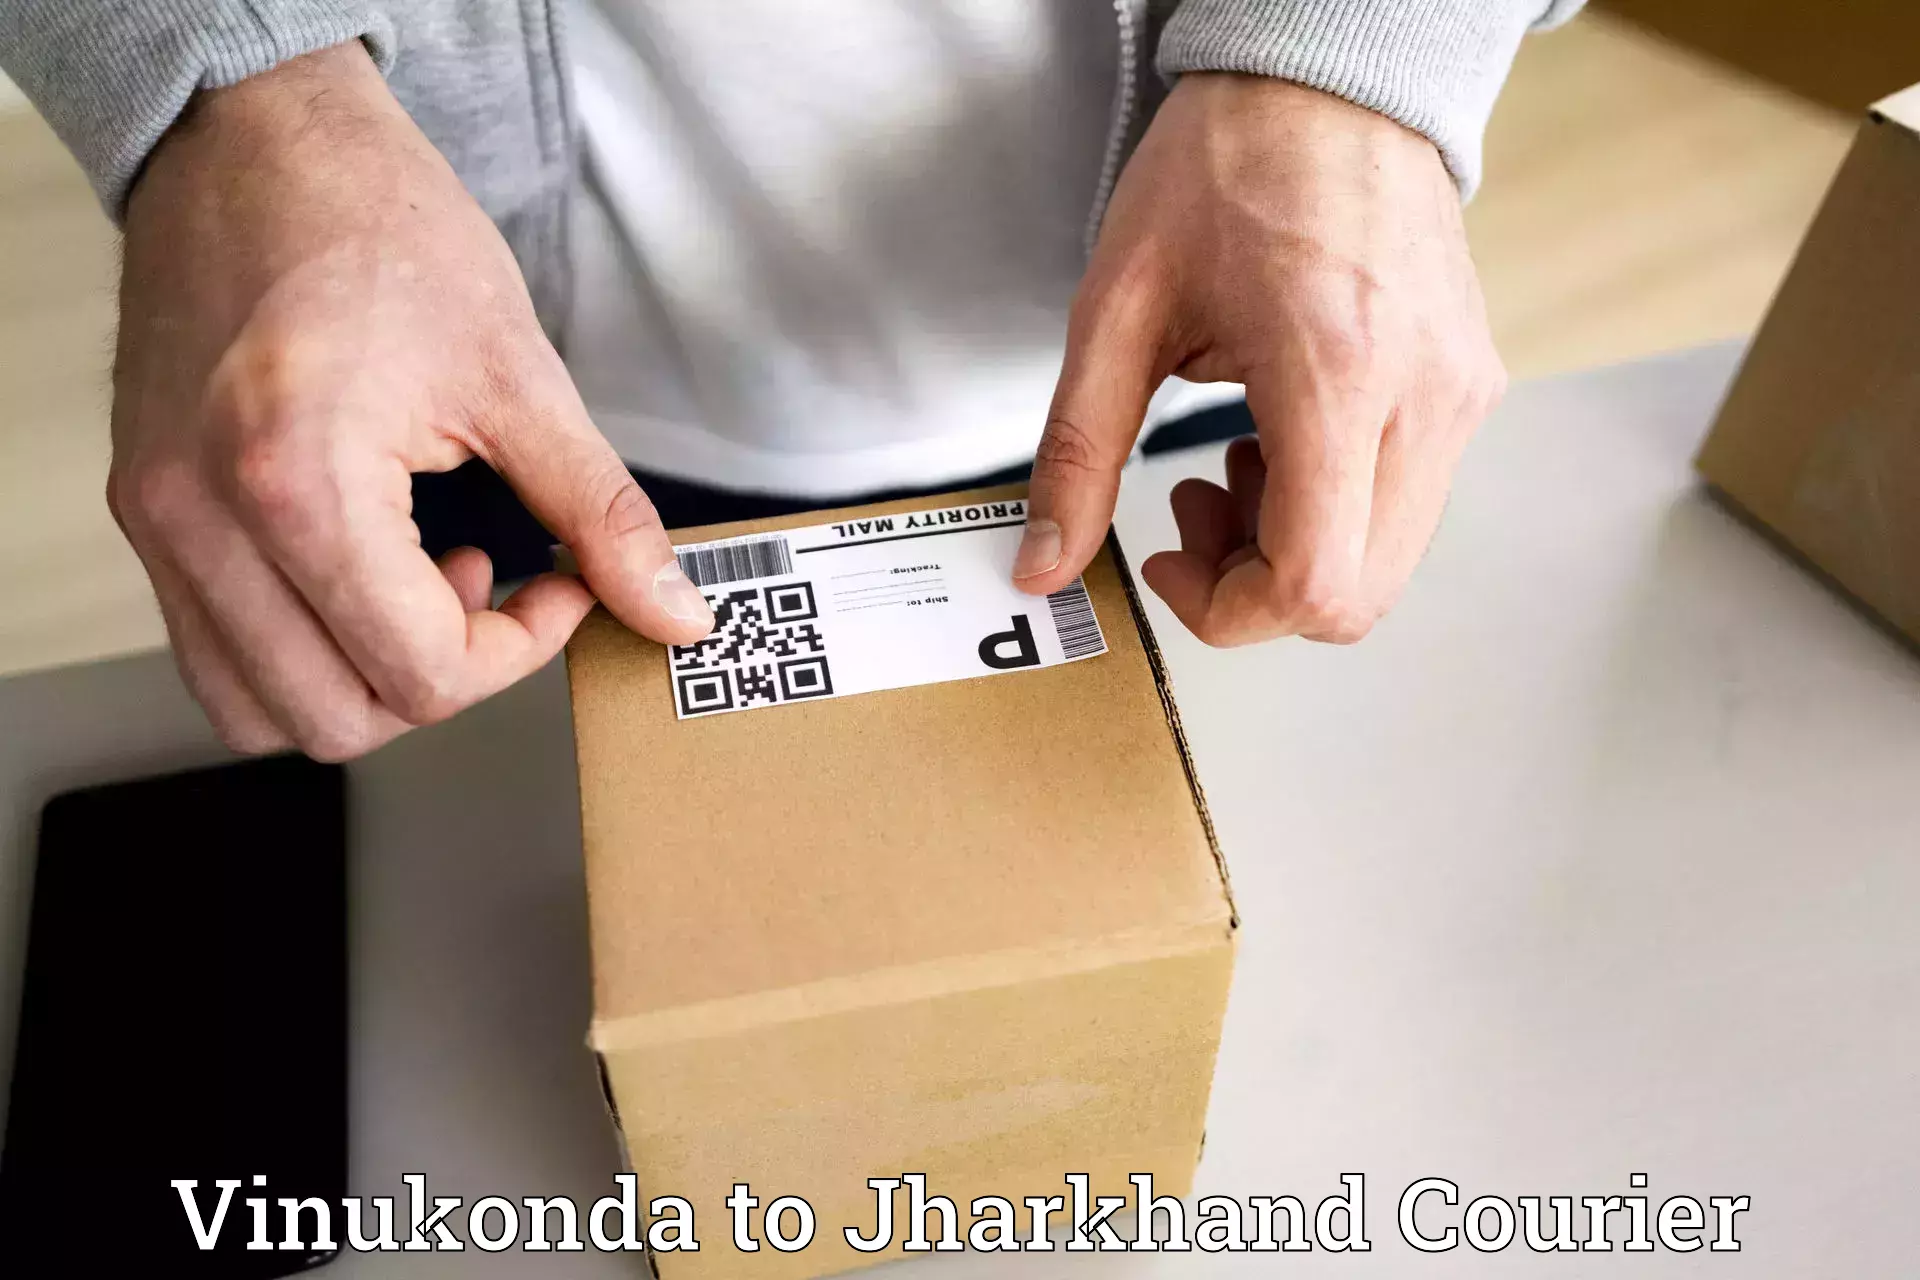 Courier service comparison Vinukonda to Chatra